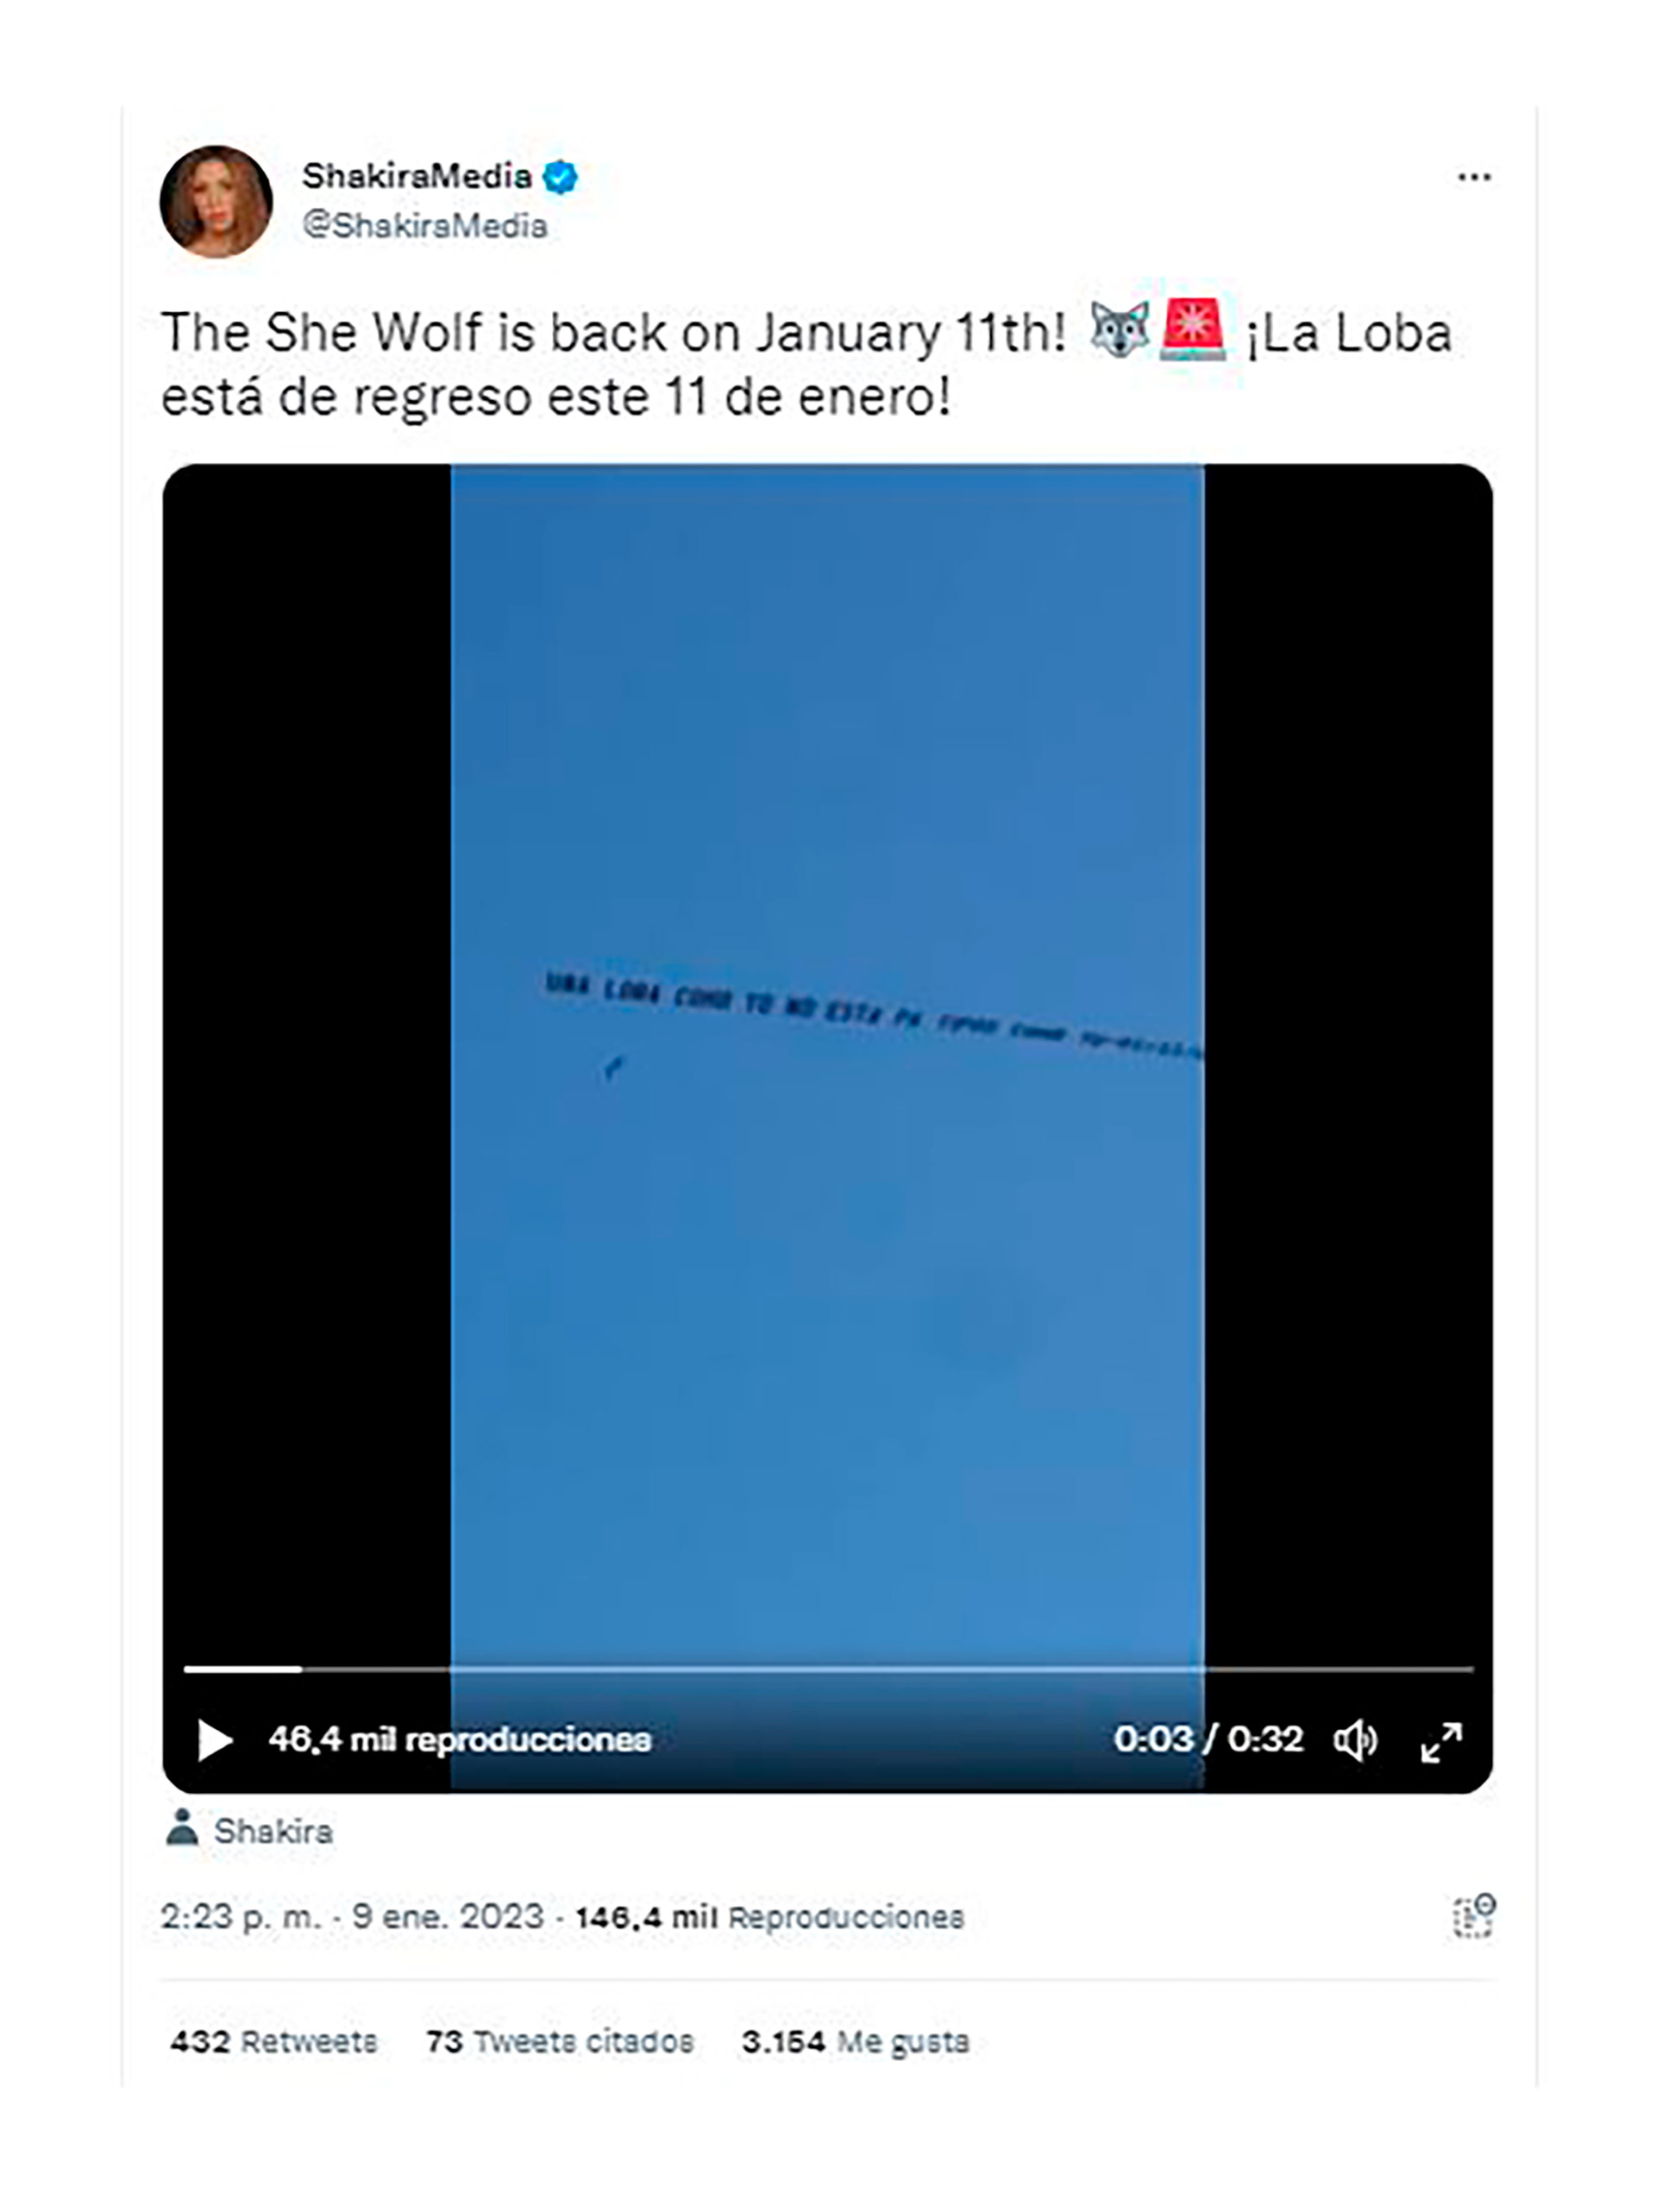 El curioso avión que posteó Shakira y voló sobre Miami y Mar del Plata con el mensaje "La Loba está de regreso este 11 de enero"